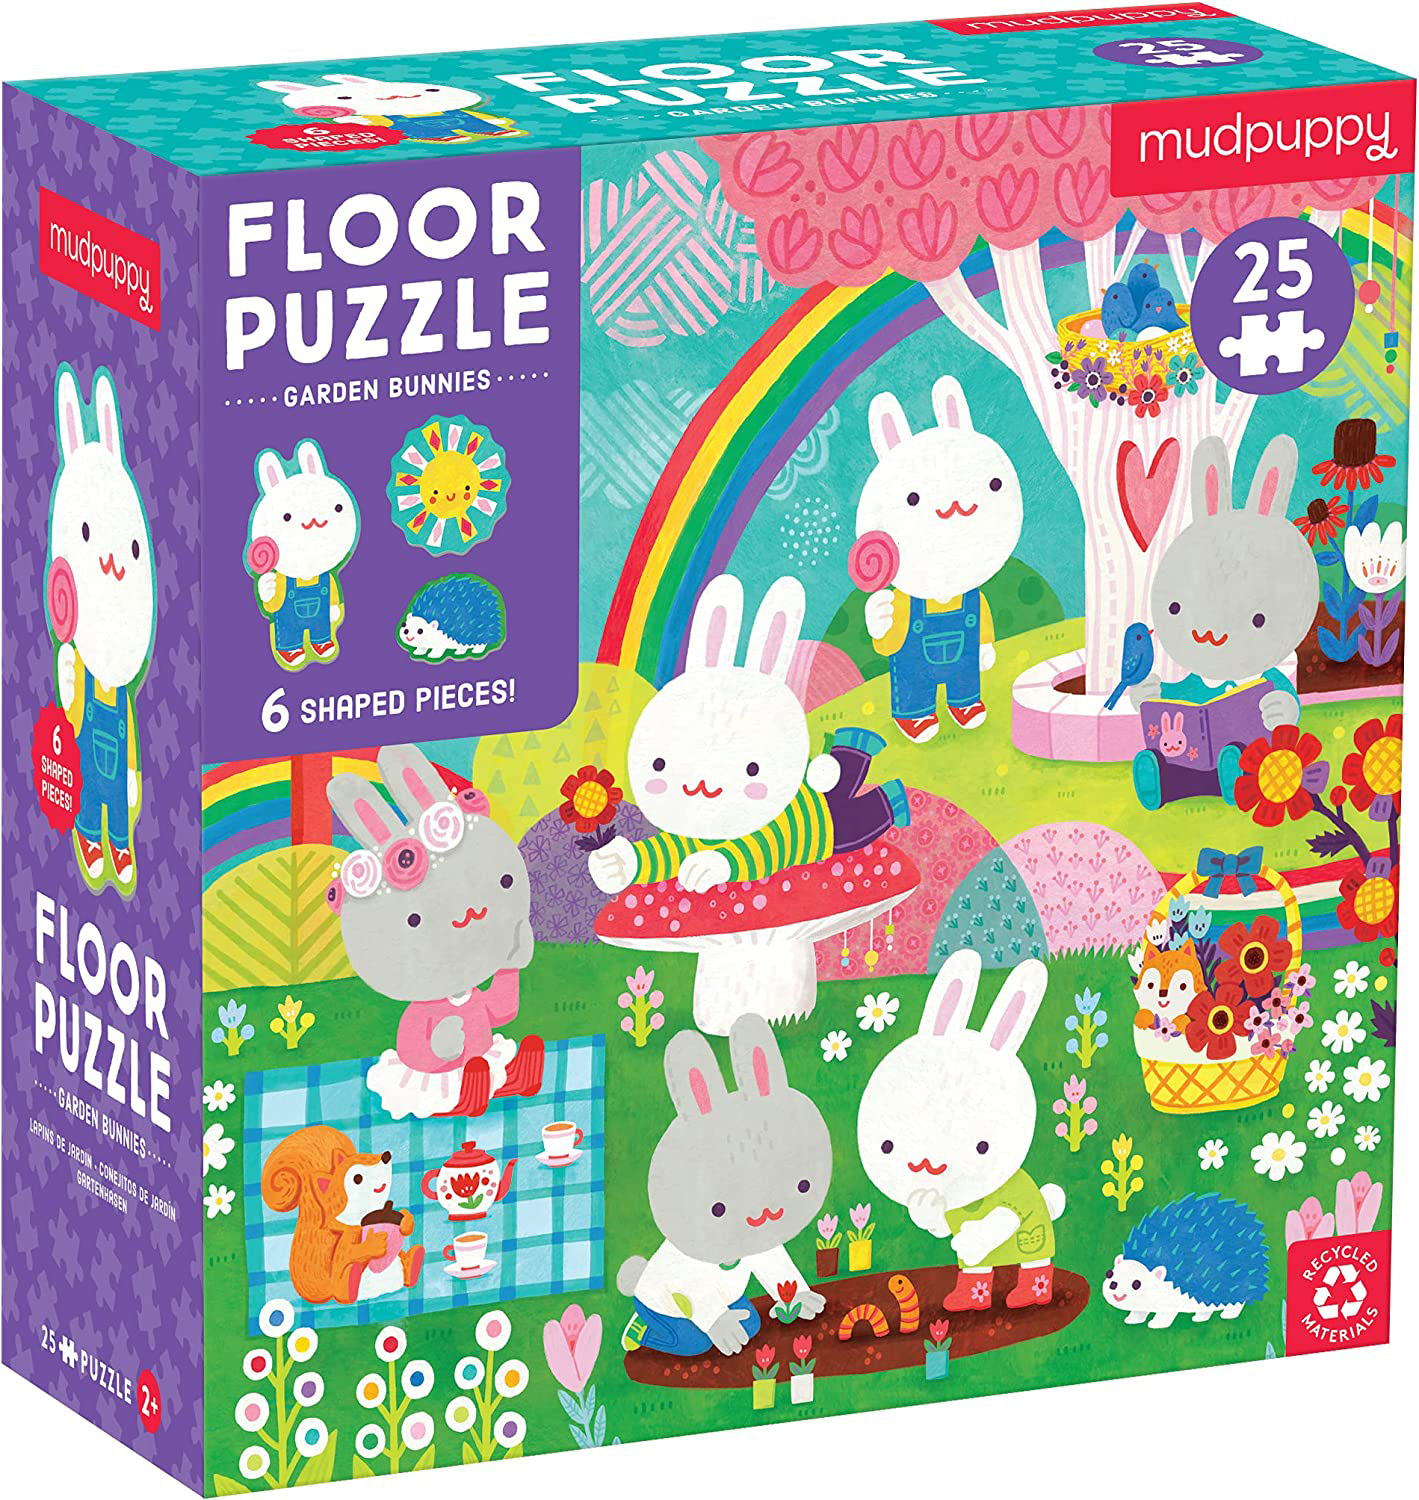 Garden Bunnies Floor Puzzle